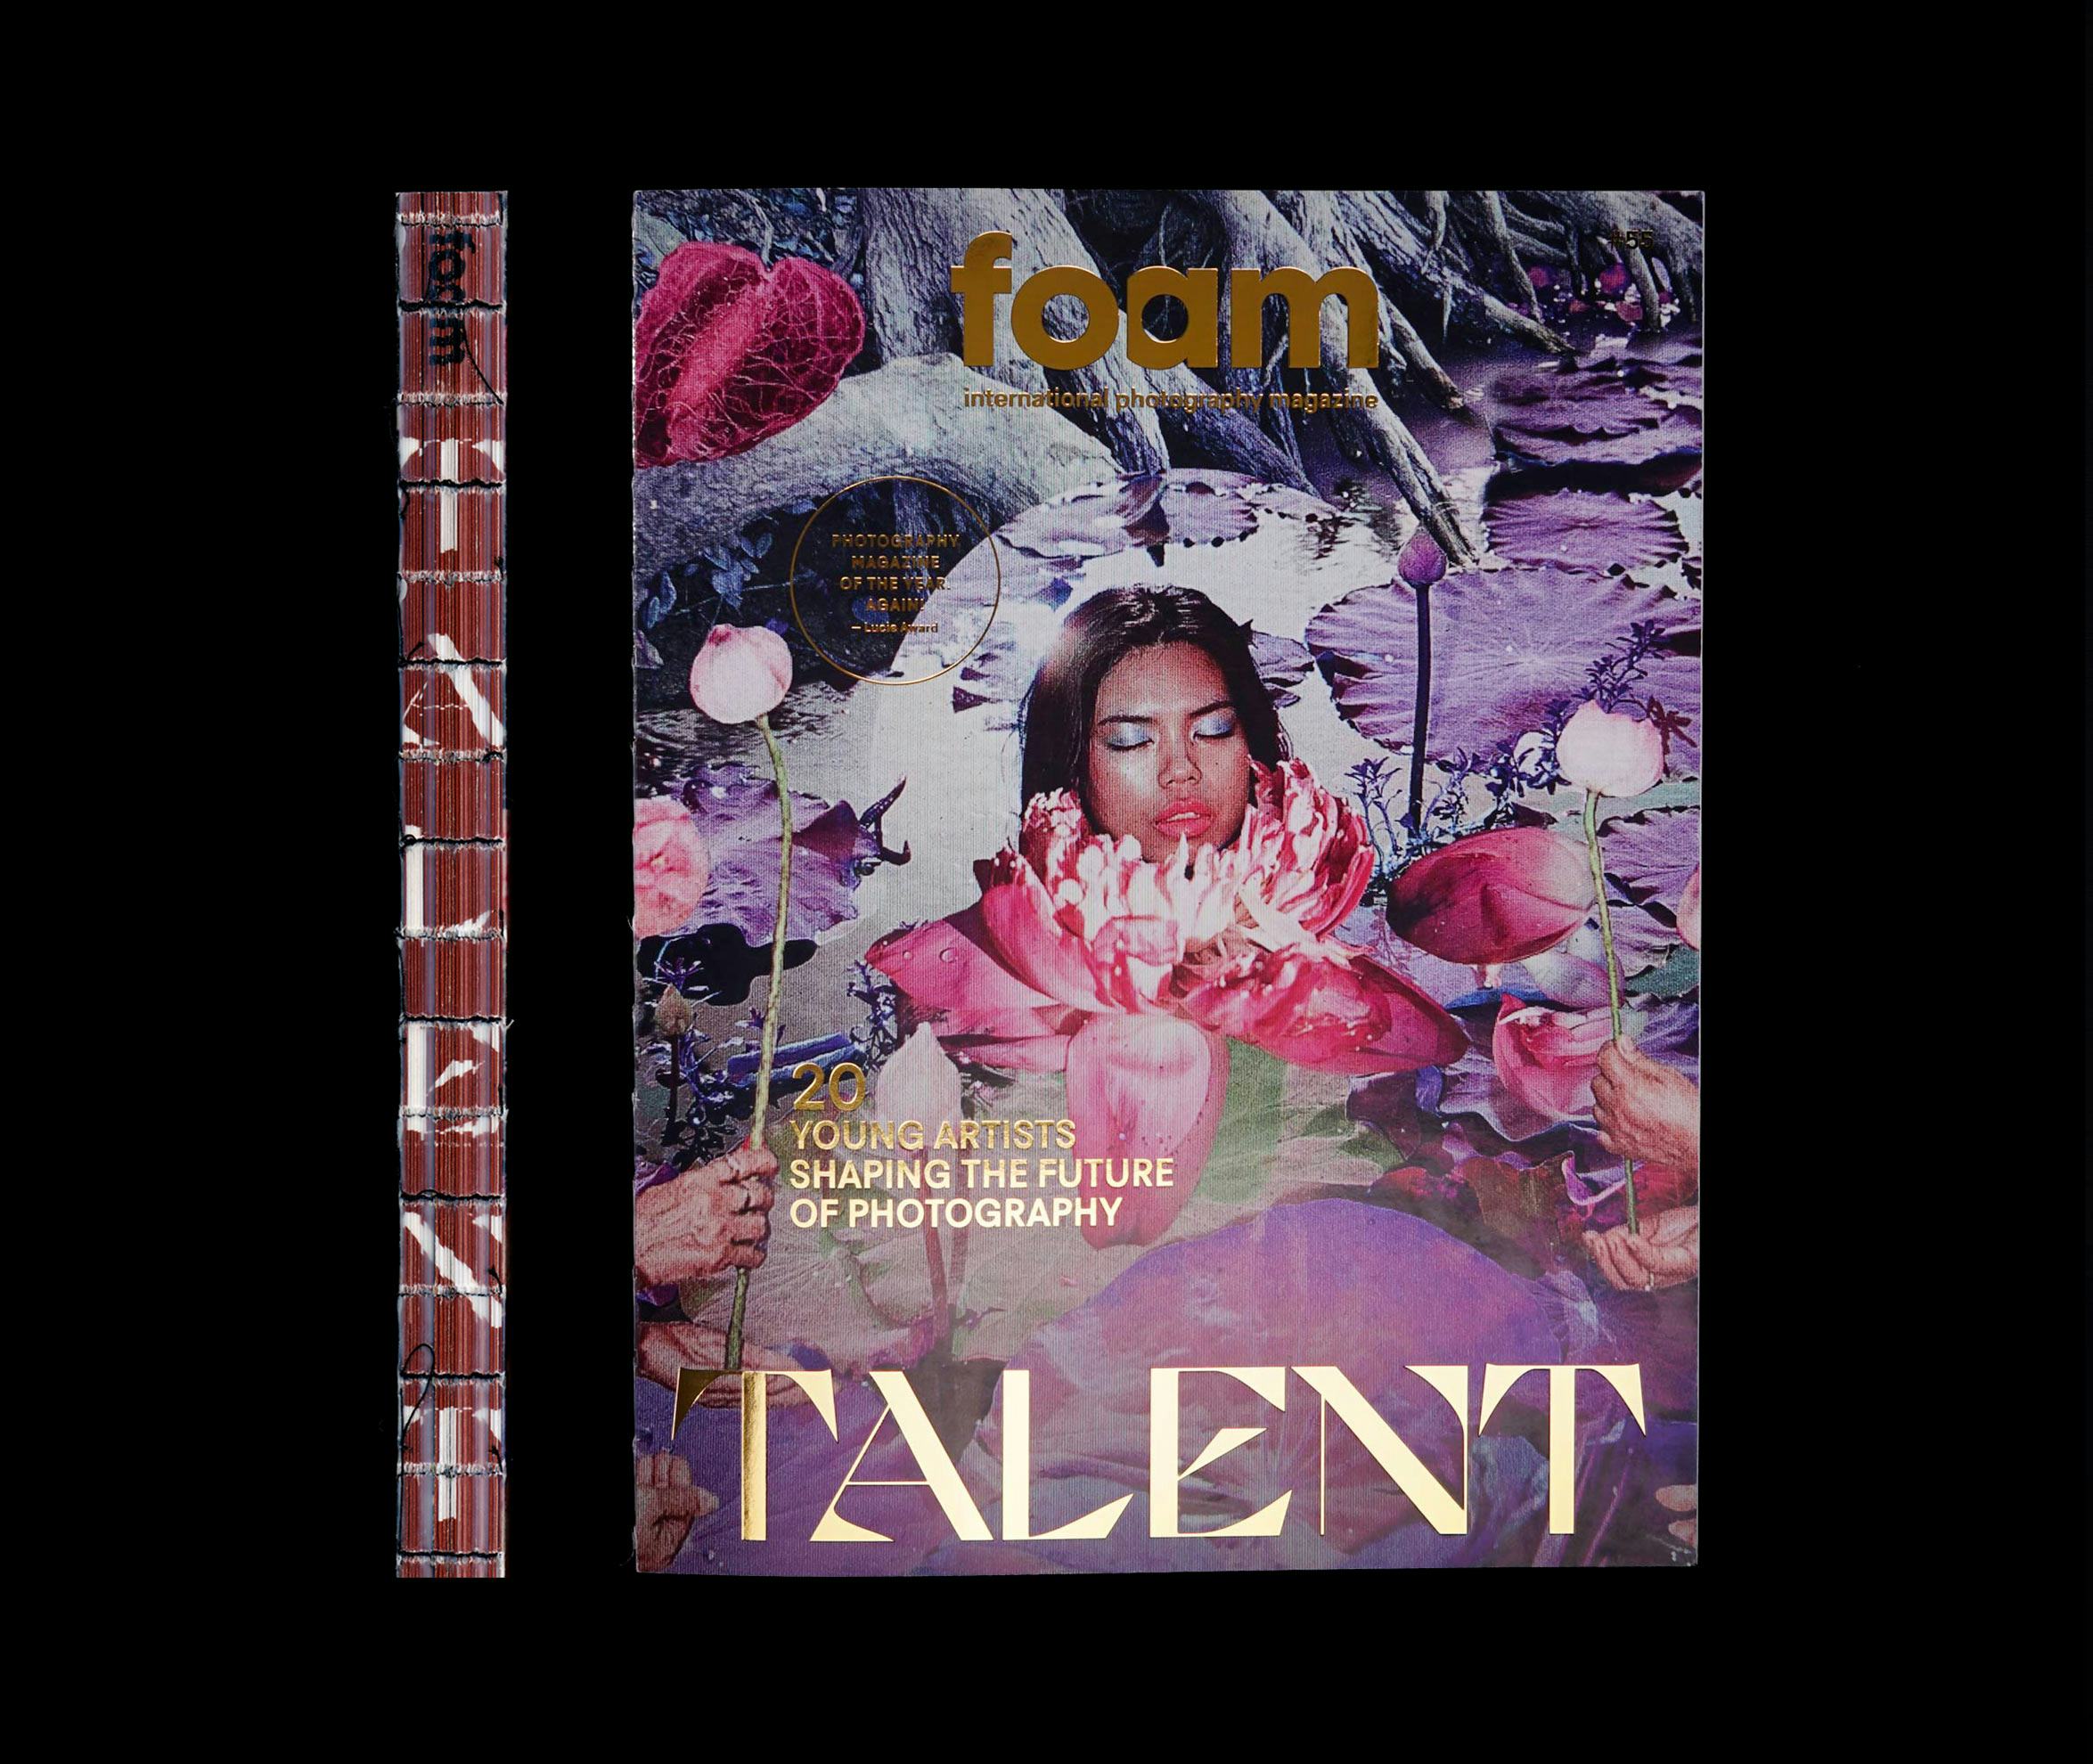 foam talent 2020 cover 